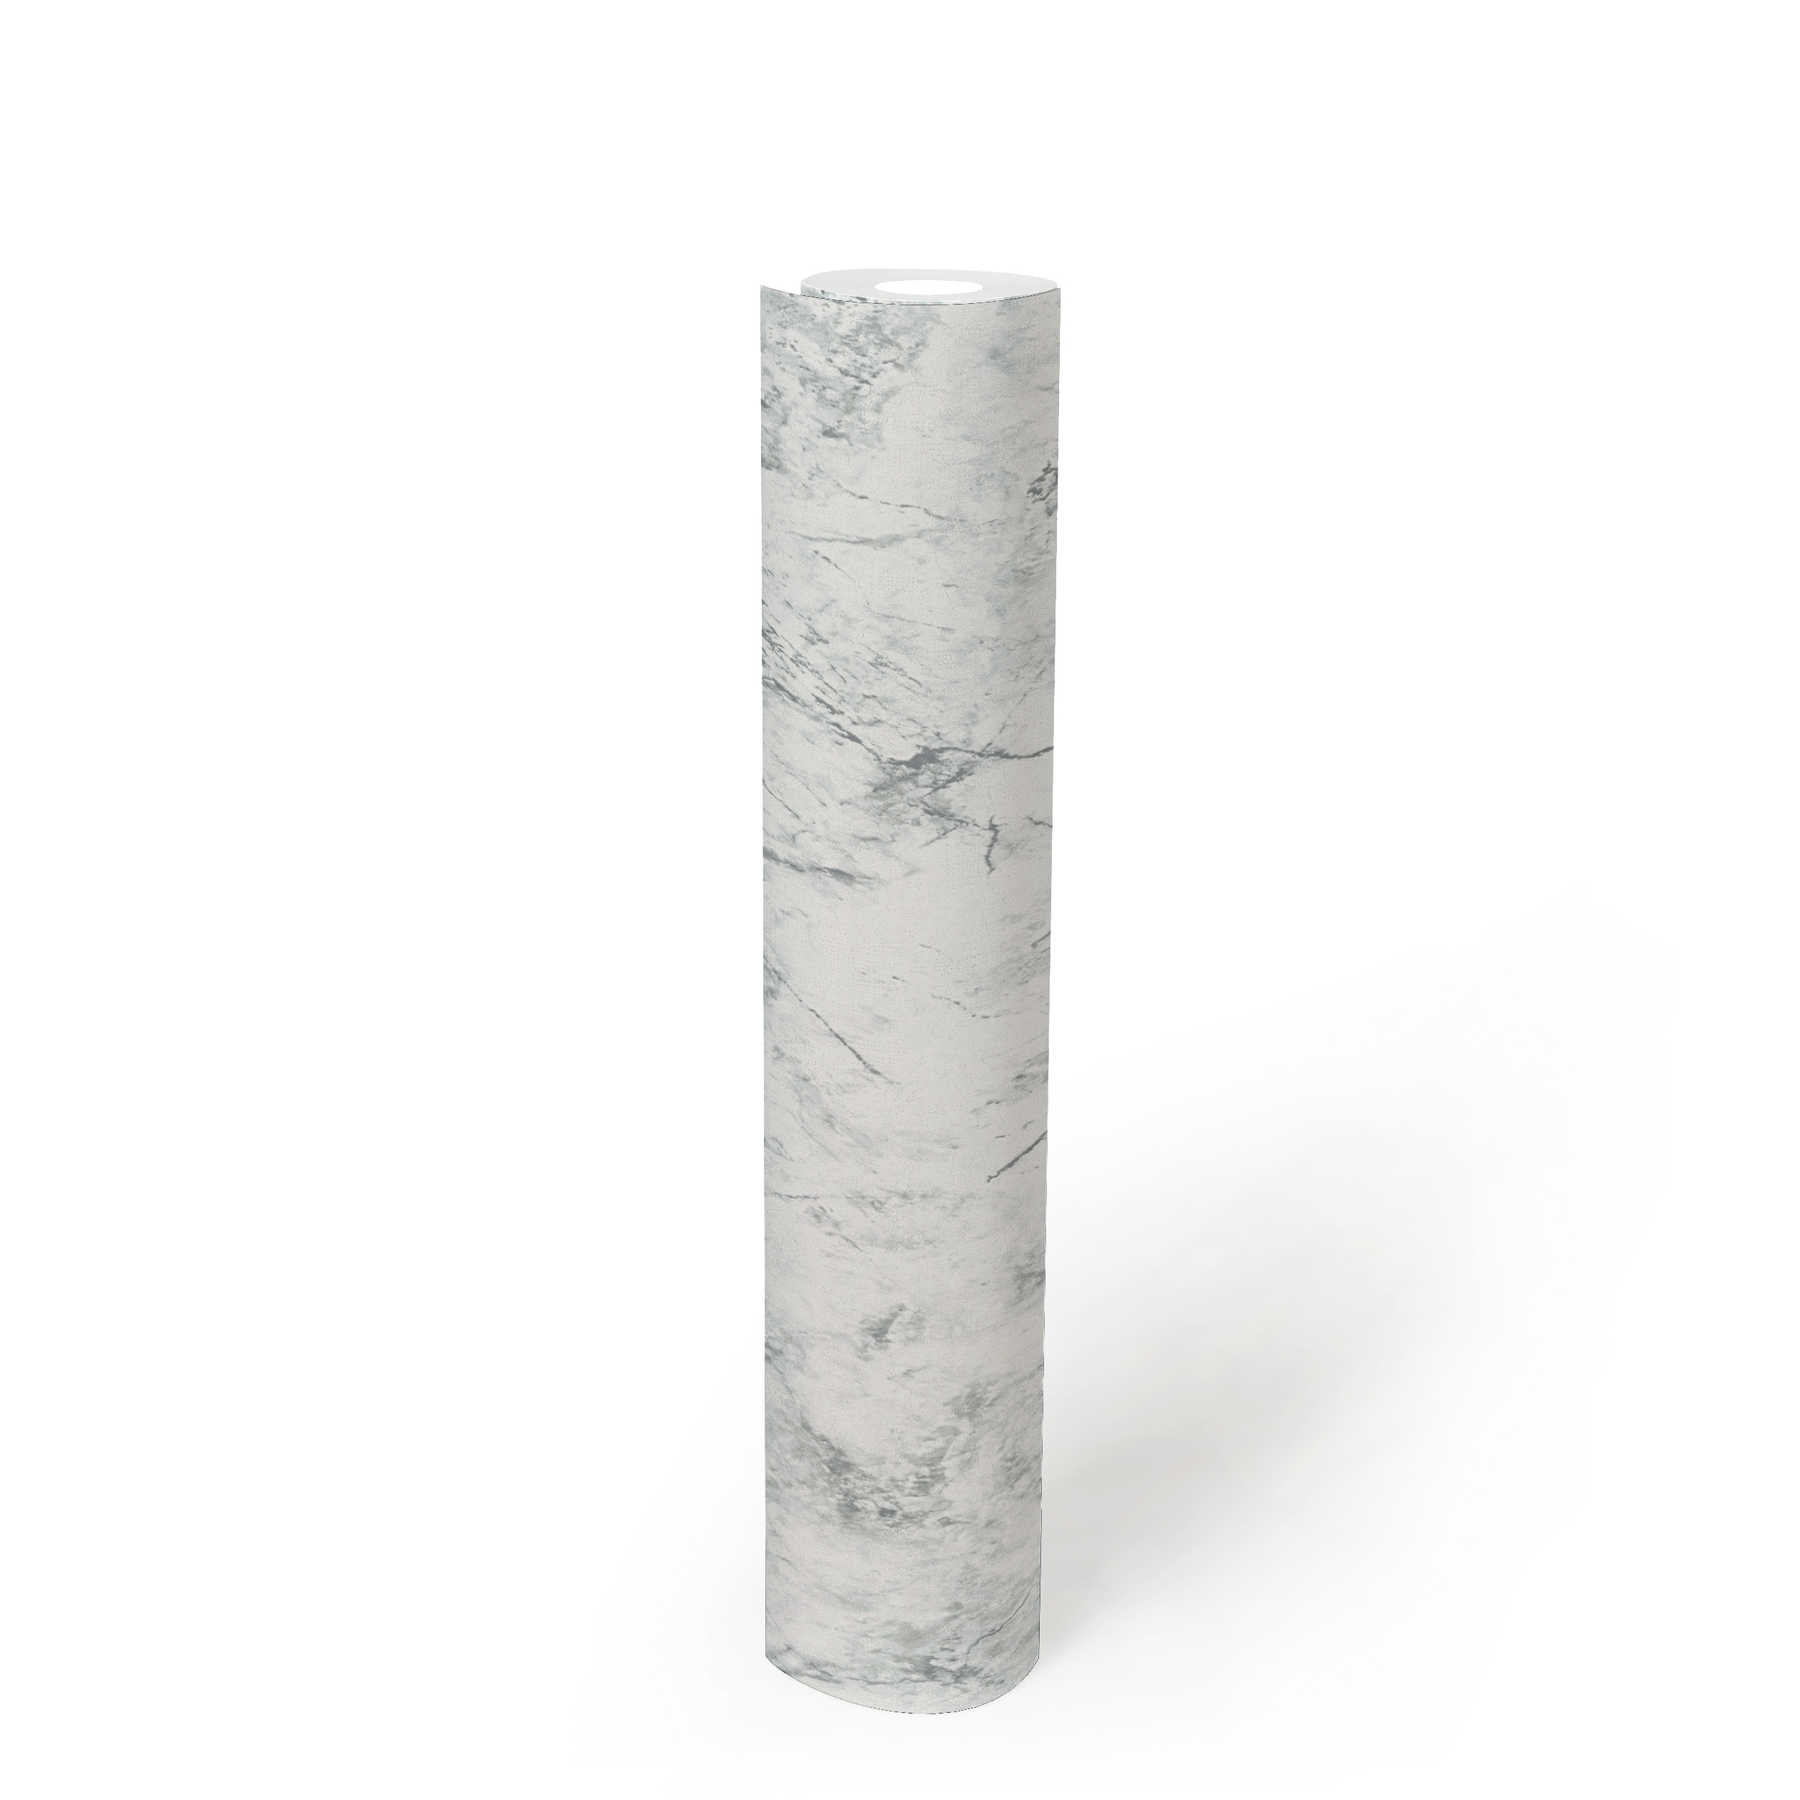             Papier peint intissé effet marbre fin - blanc, gris
        